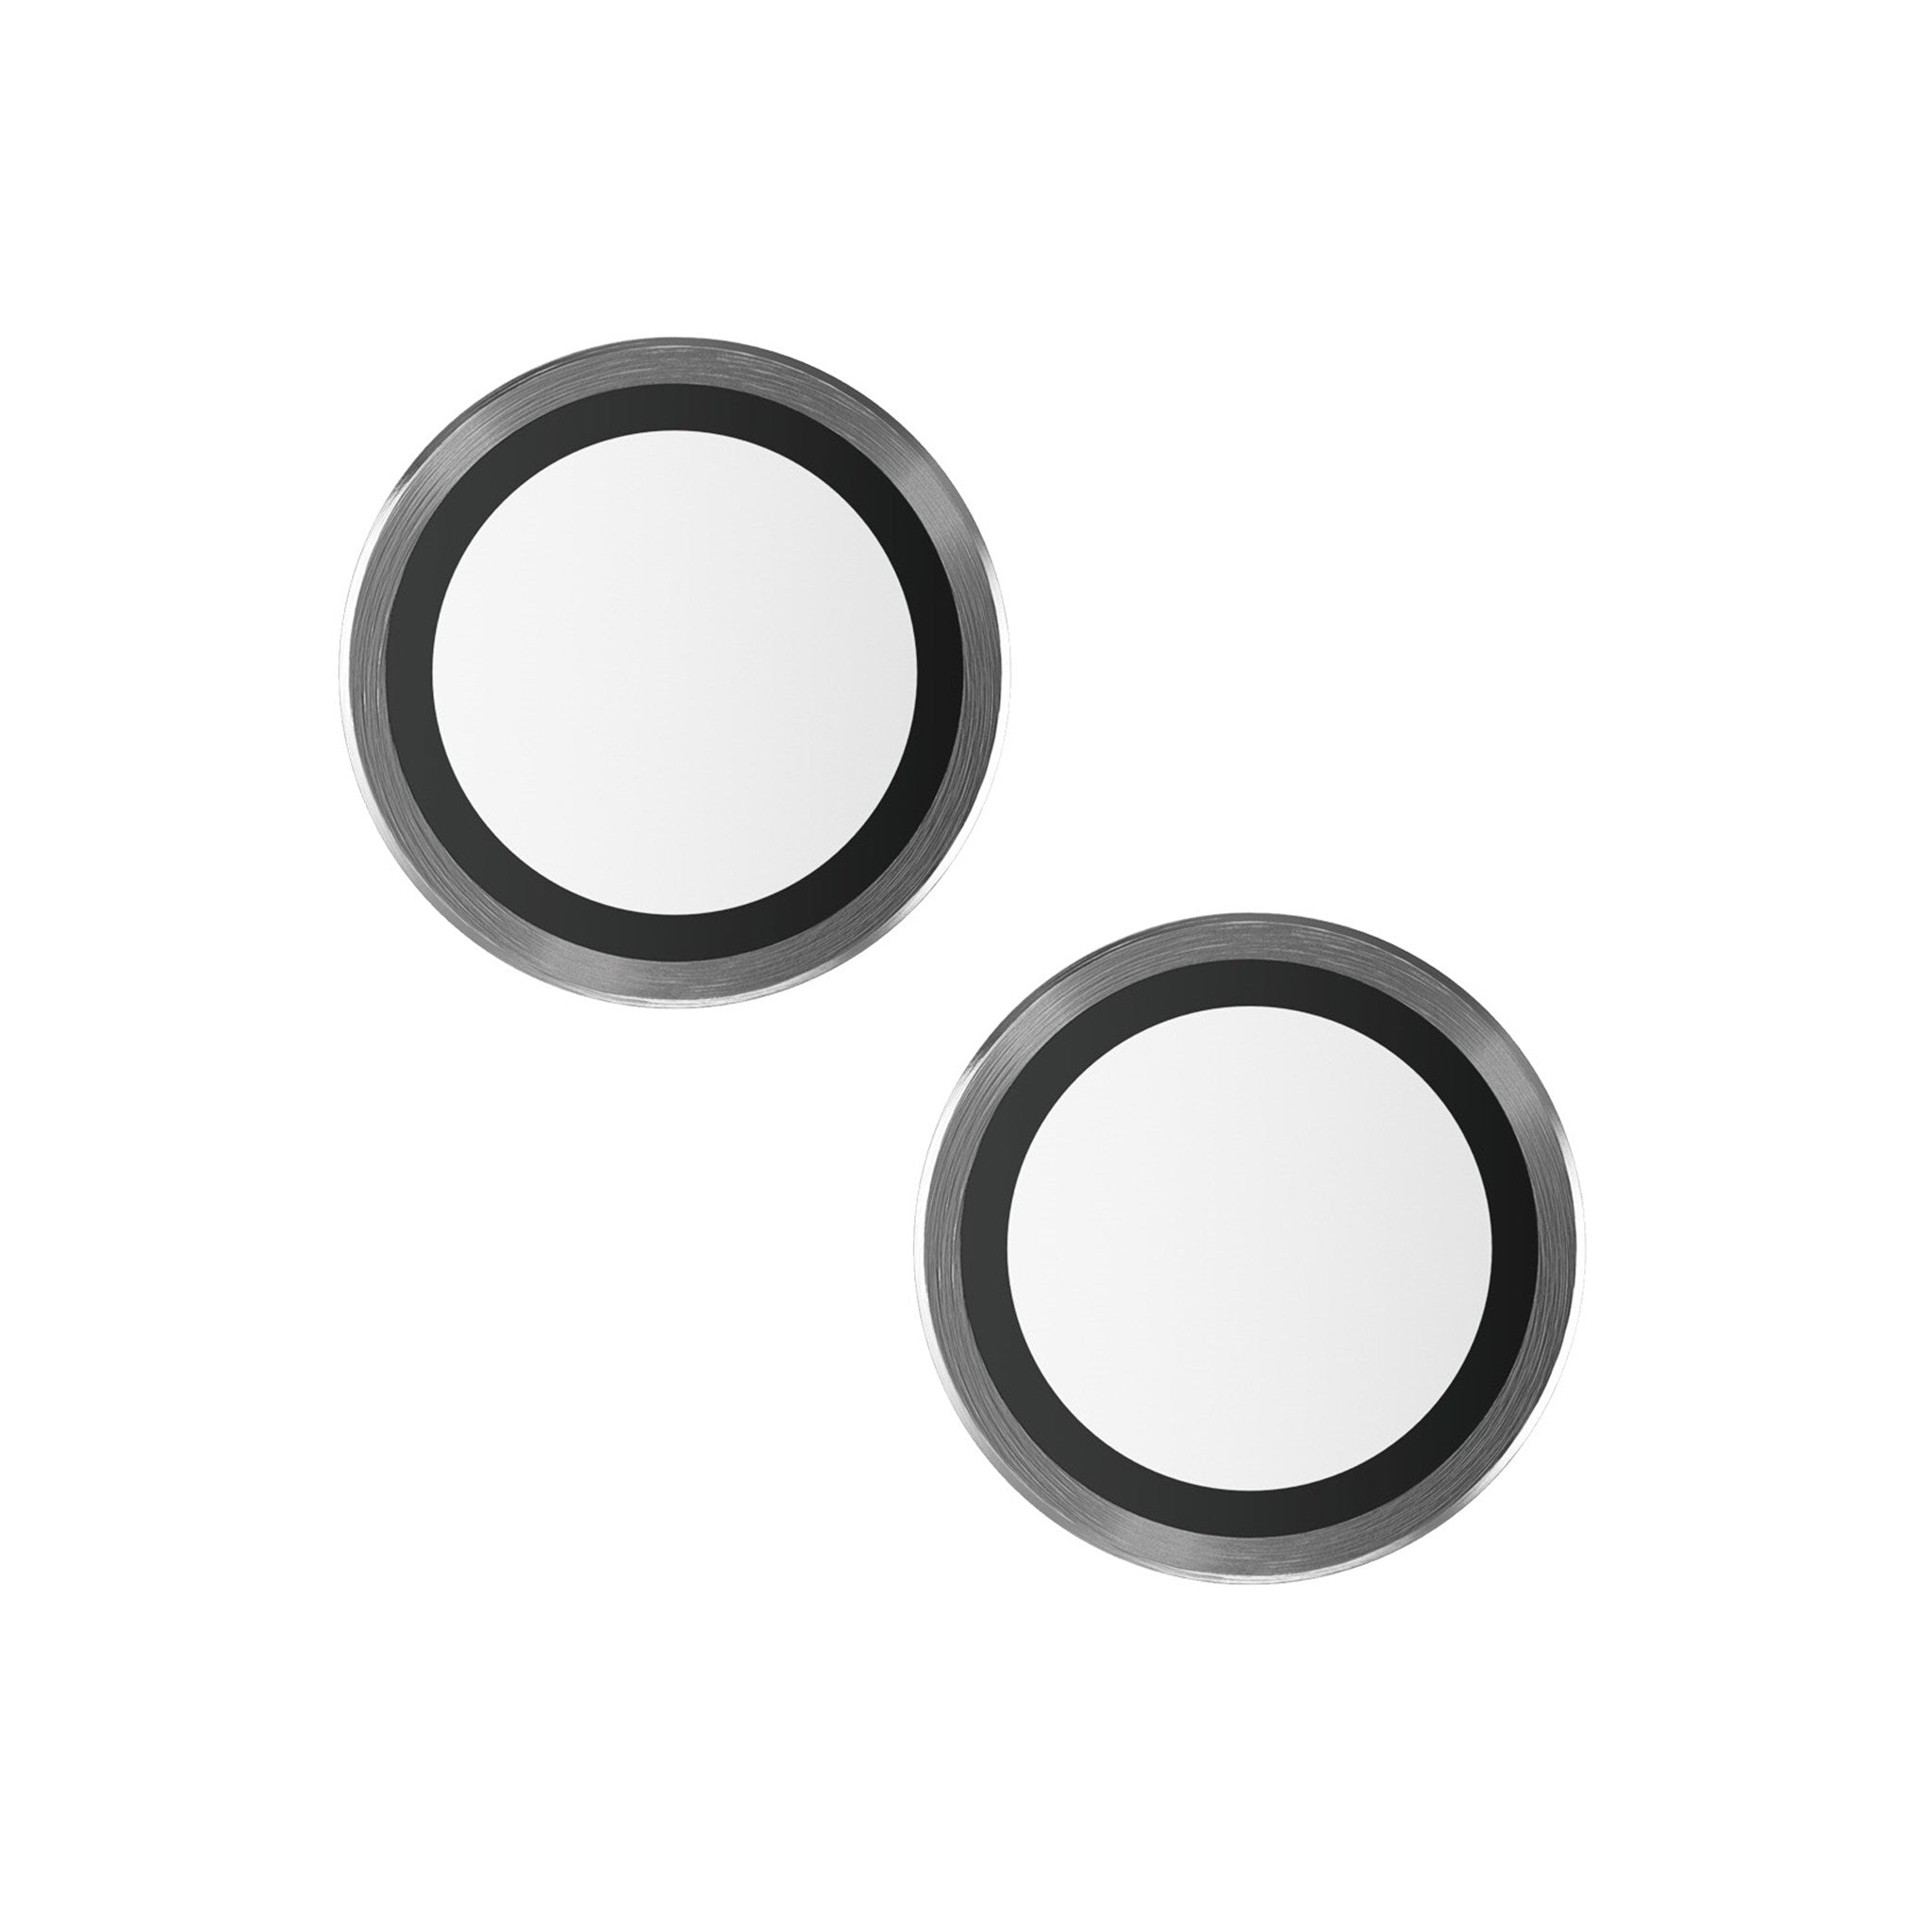 13) Apple Kameraschutz(für iPhone Kameraschutz Hoops™ | PANZERGLASS 13 mini